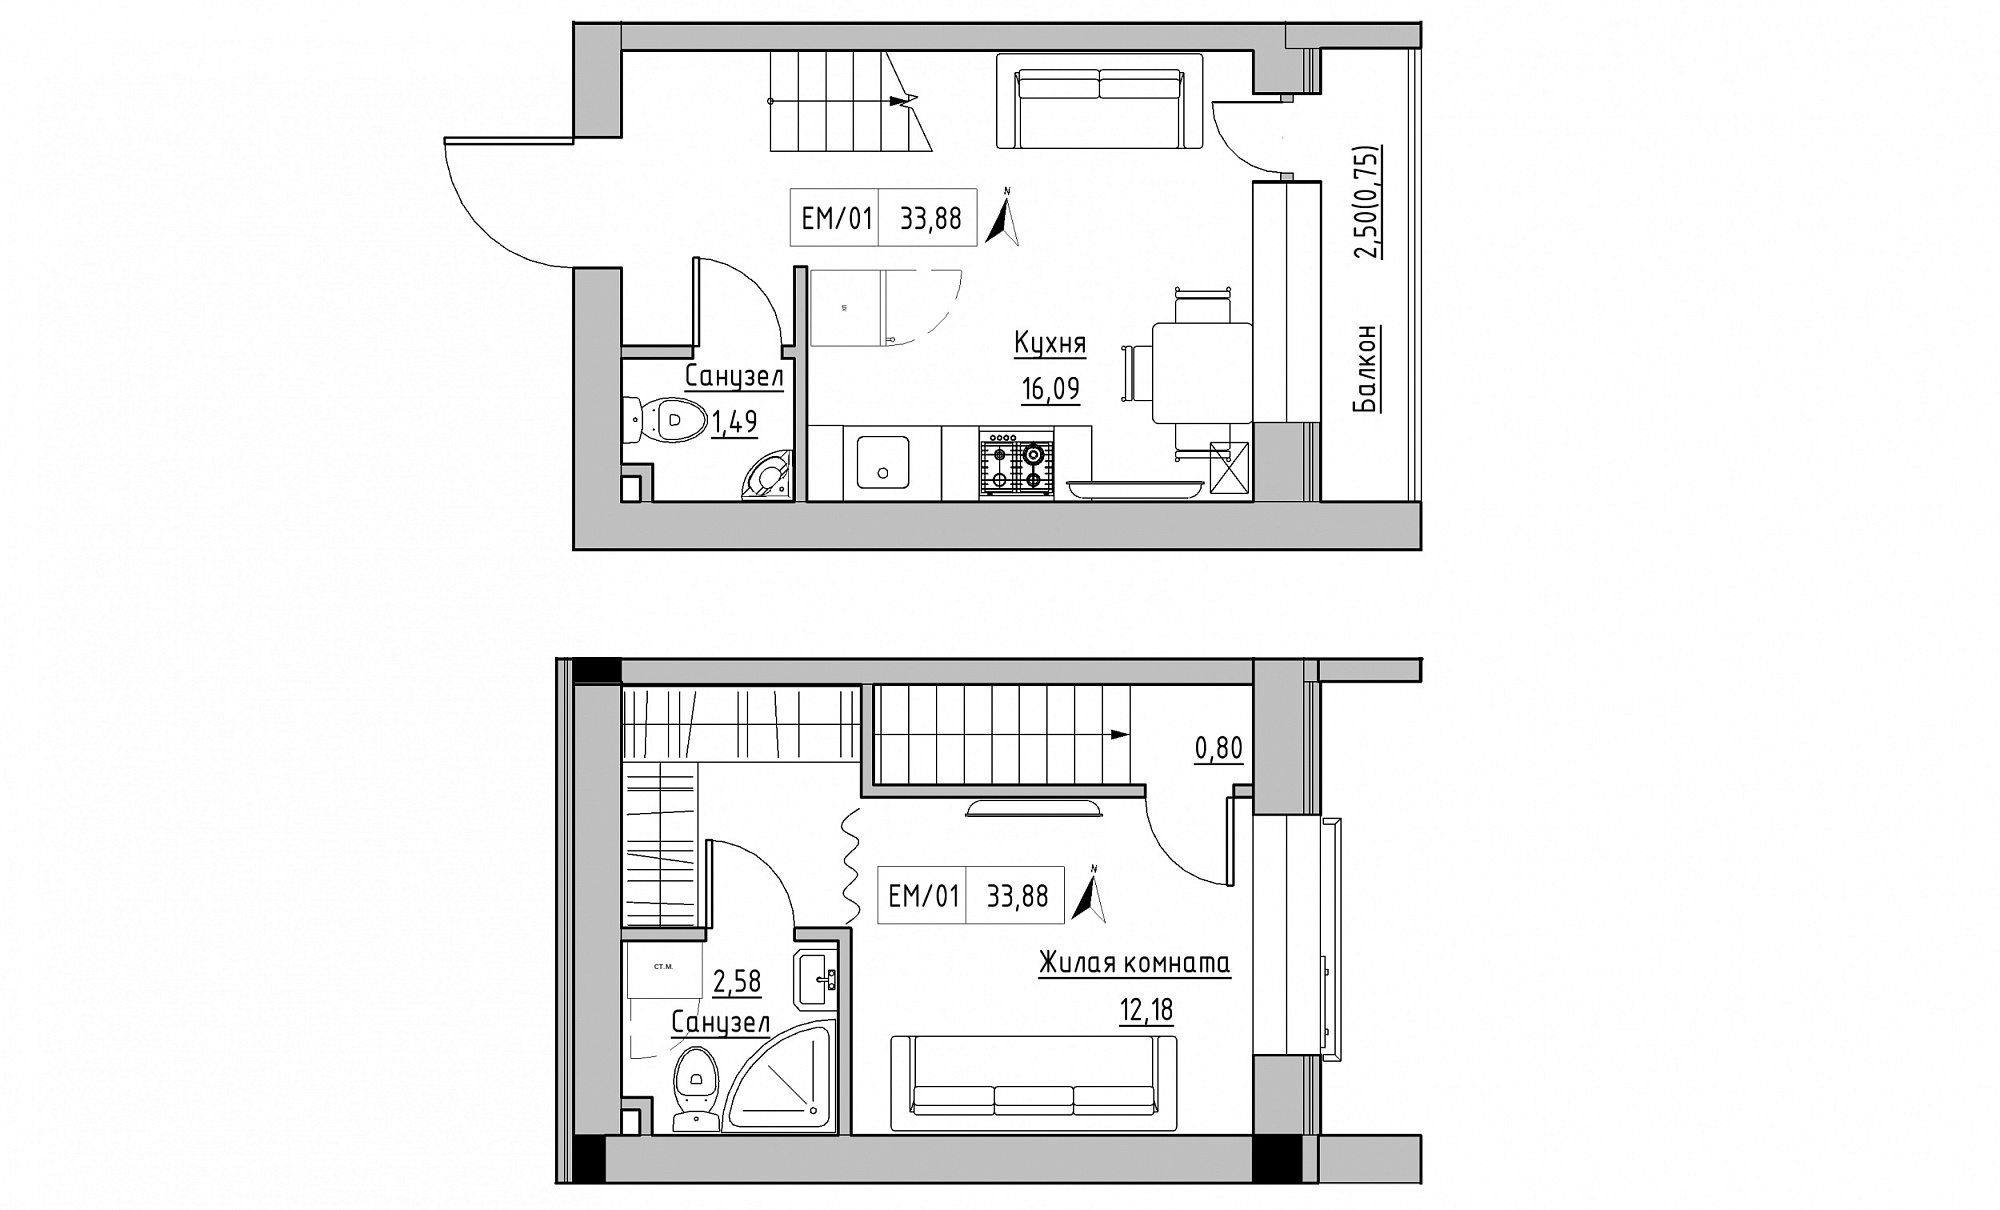 Planning 2-lvl flats area 33.88m2, KS-015-05/0007.